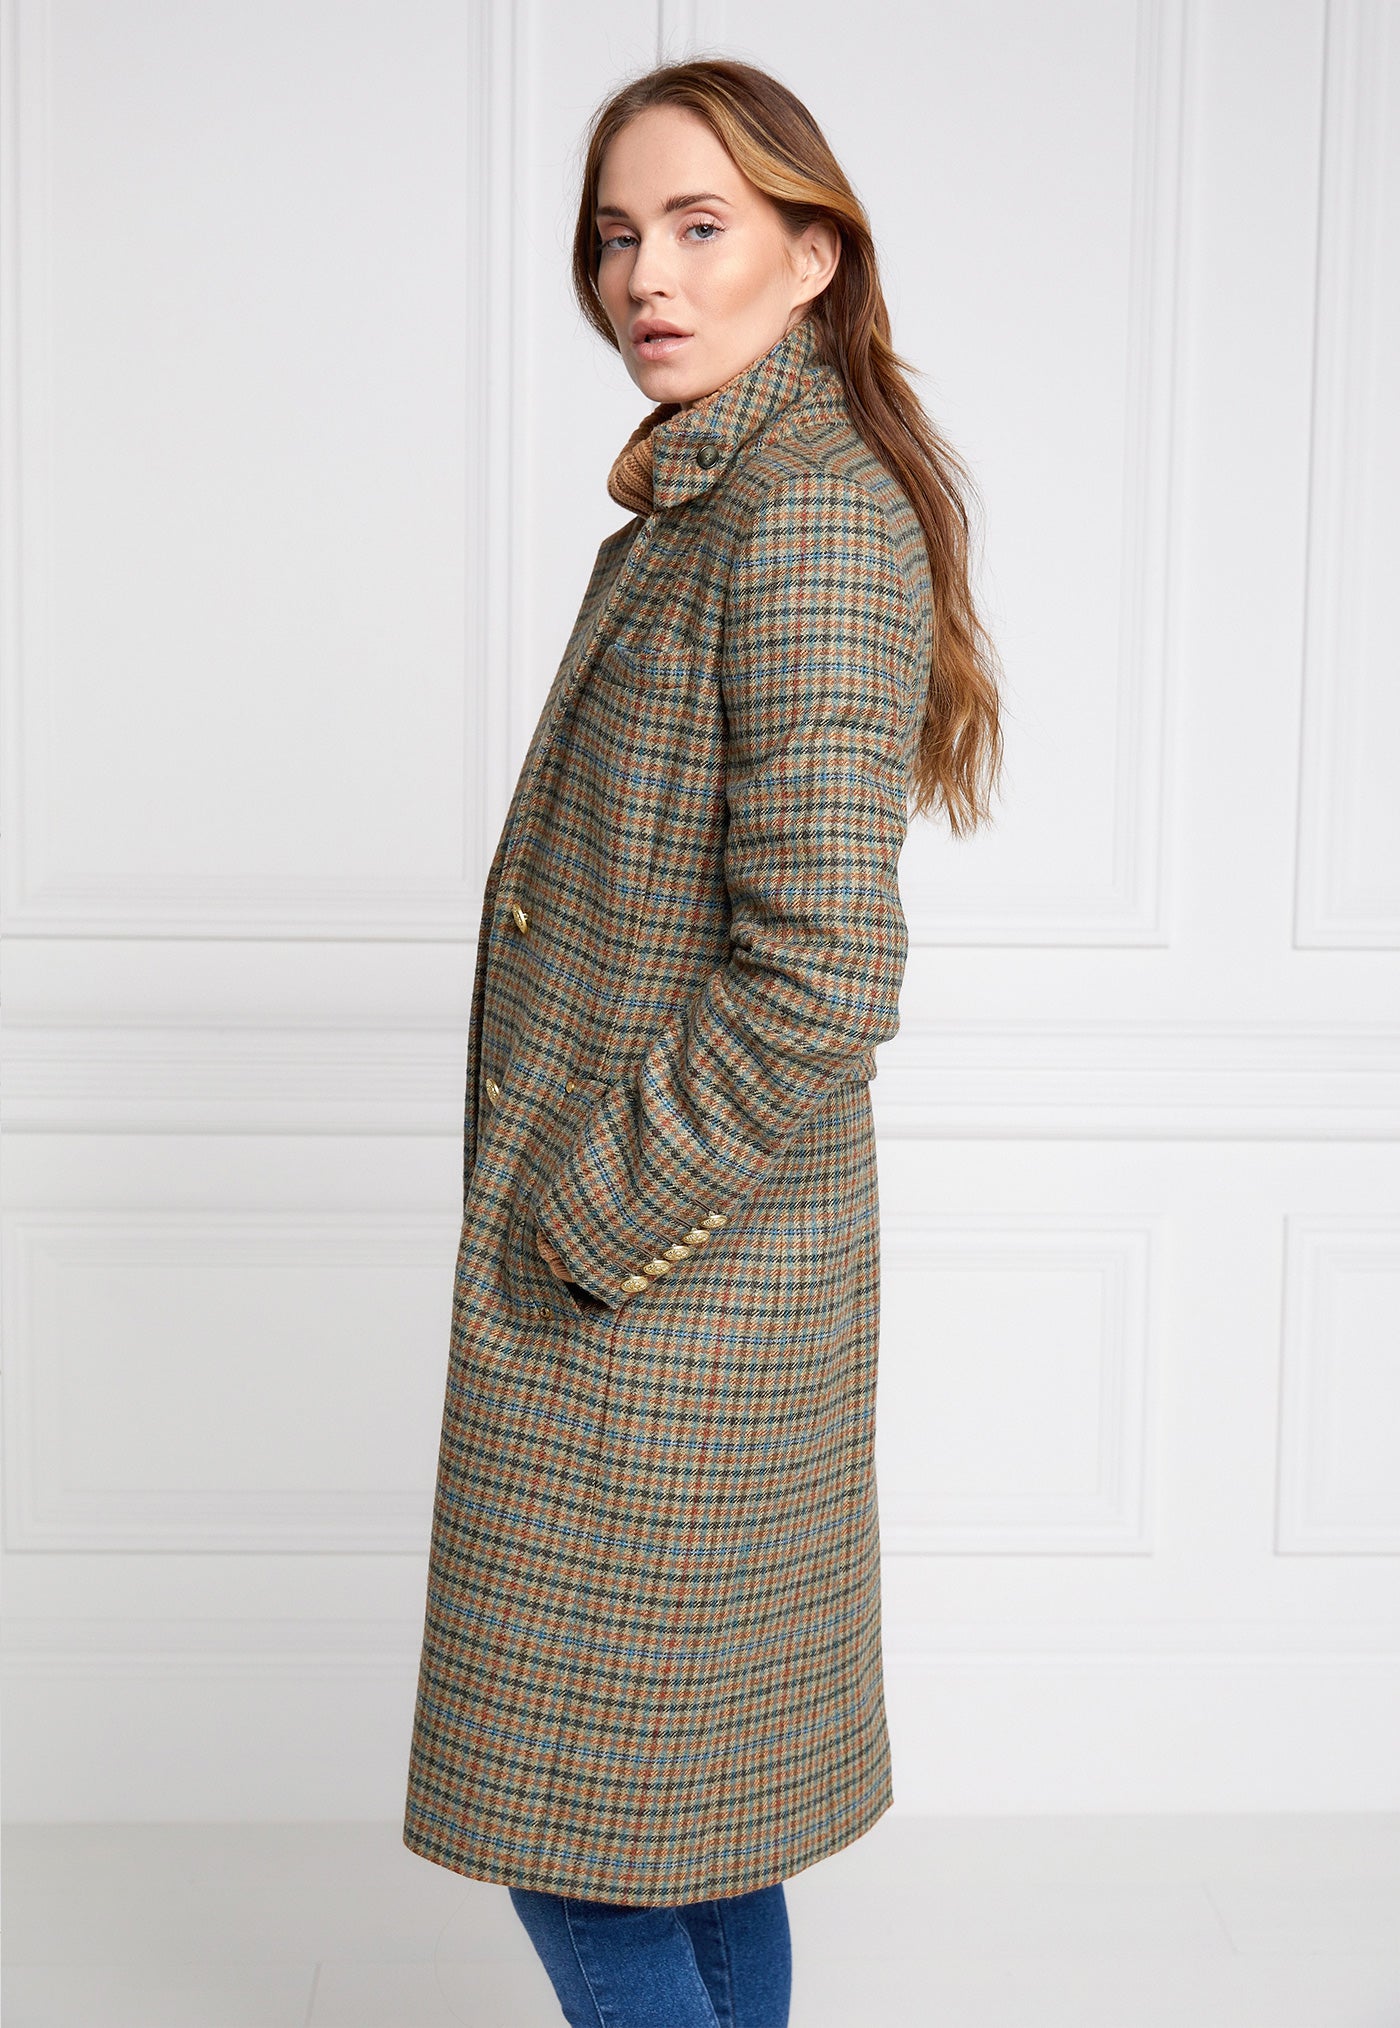 Regency Coat - Bredon Tweed sold by Angel Divine